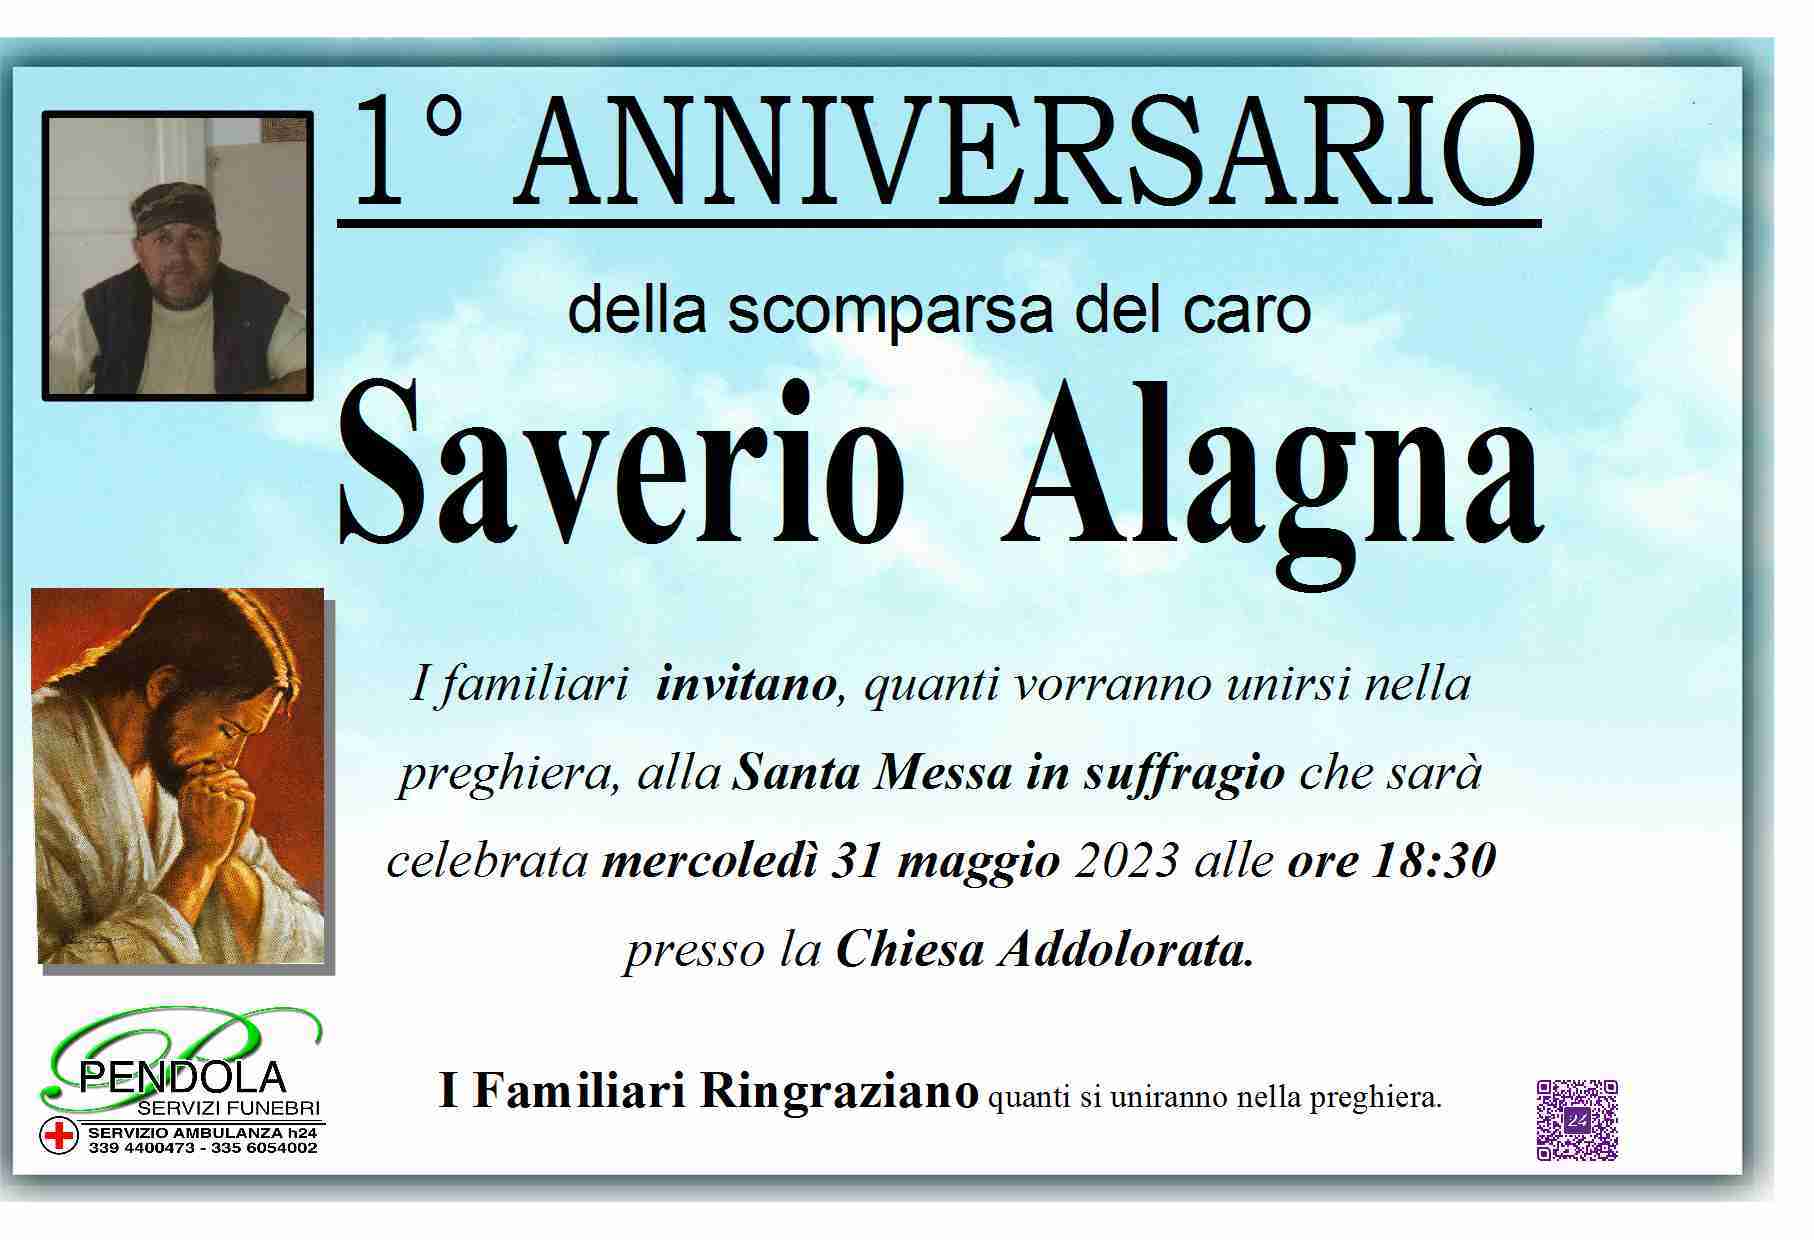 Saverio Alagna